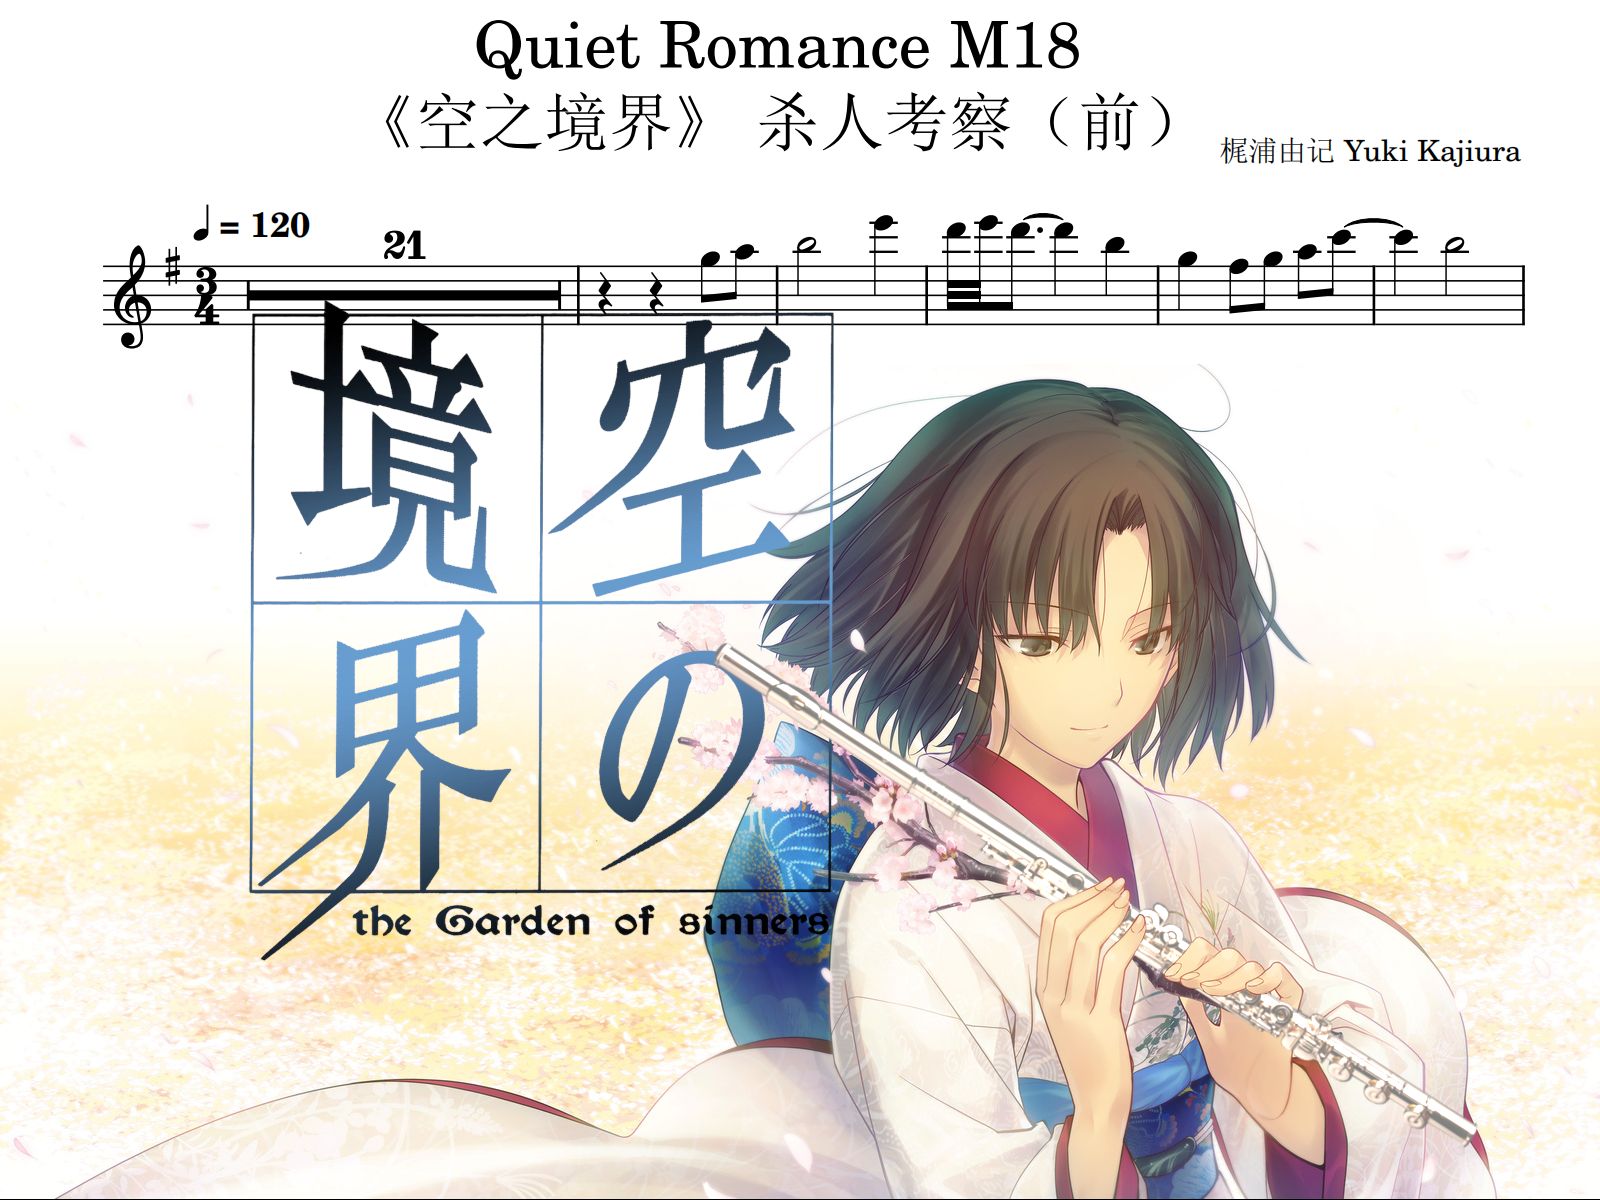 【长笛】Quiet Romance M18 《空之境界》Kara no Kyoukai 梶浦由记